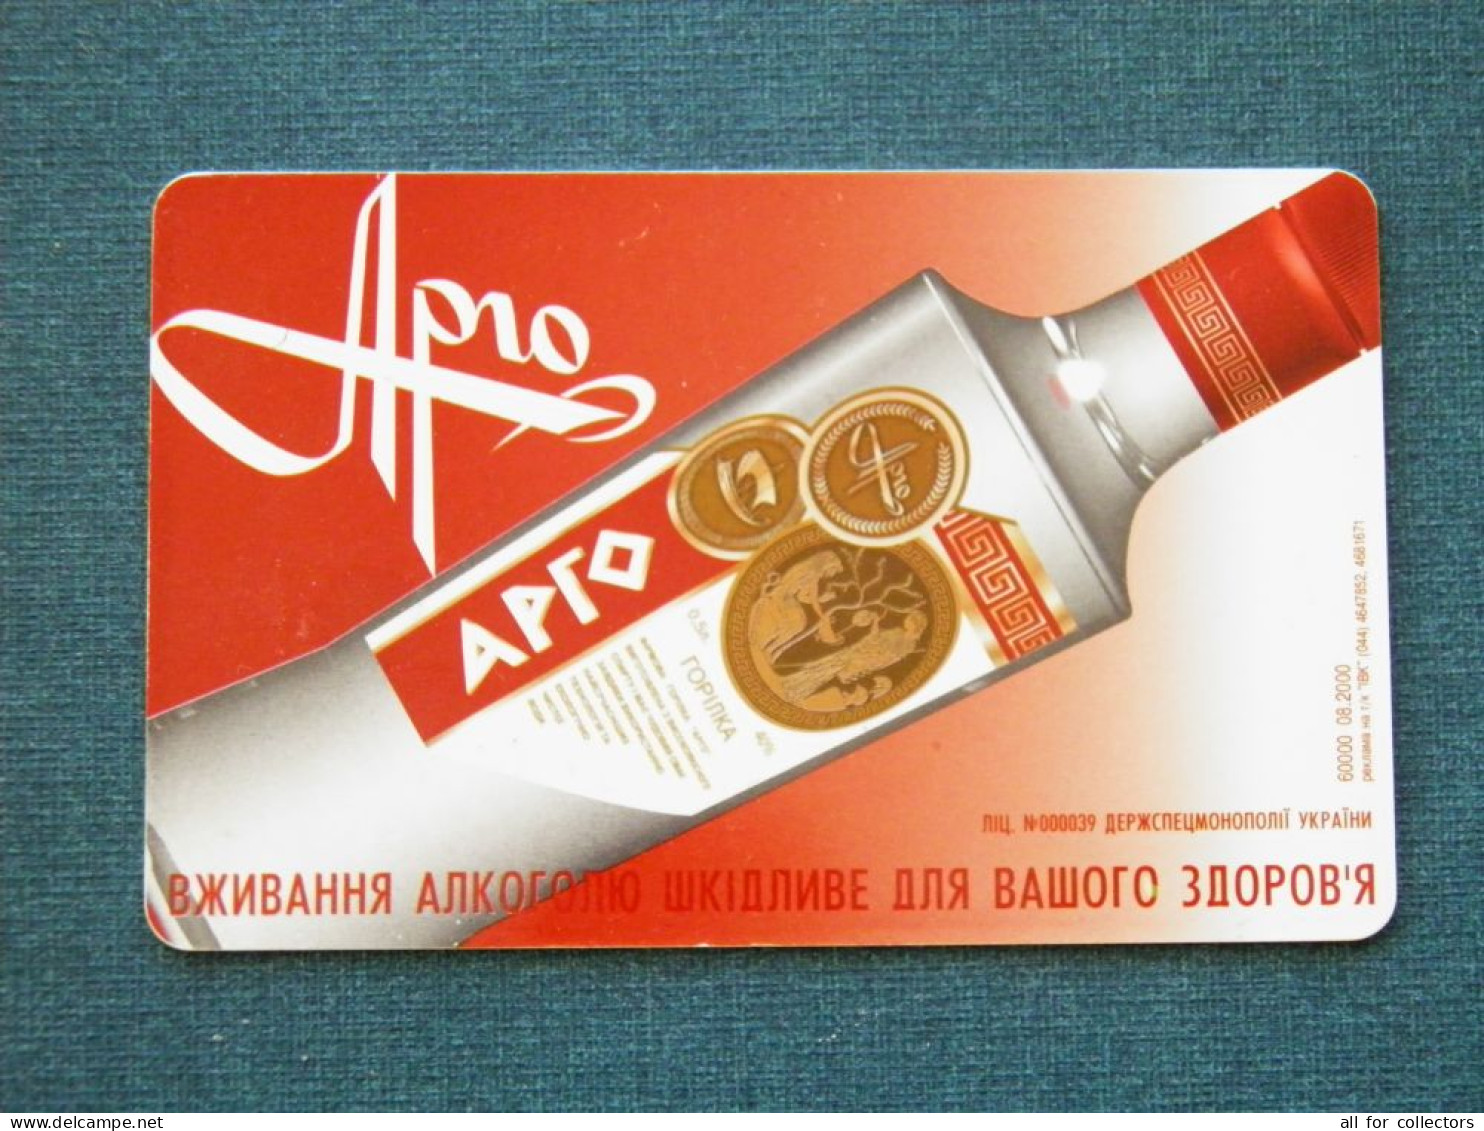 Phonecard Chip Advertising Argo Vodka Drink 3360 Units 120 Calls UKRAINE - Ukraine